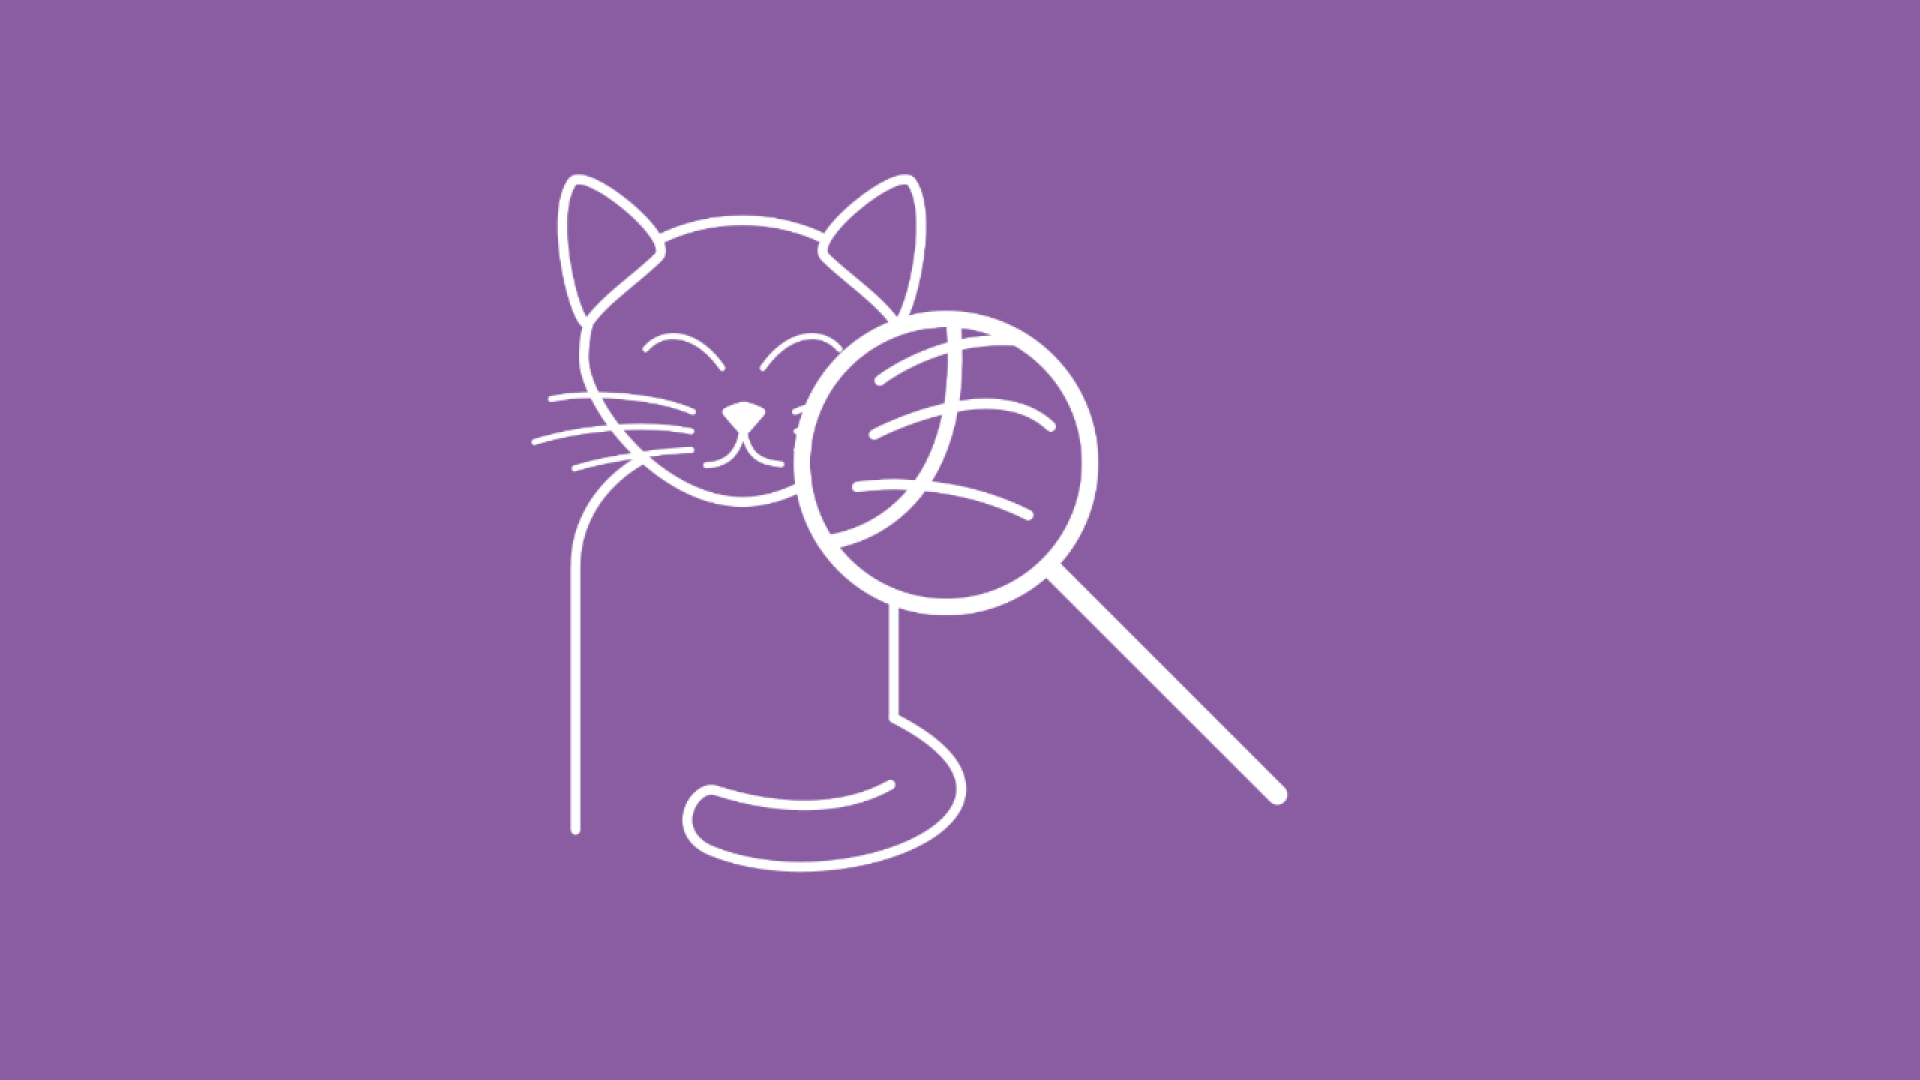 Die Suche nach der passenden Allergiker Katze wird hier durch eine Katze, vor die eine Lupe gehalten wird, illustriert